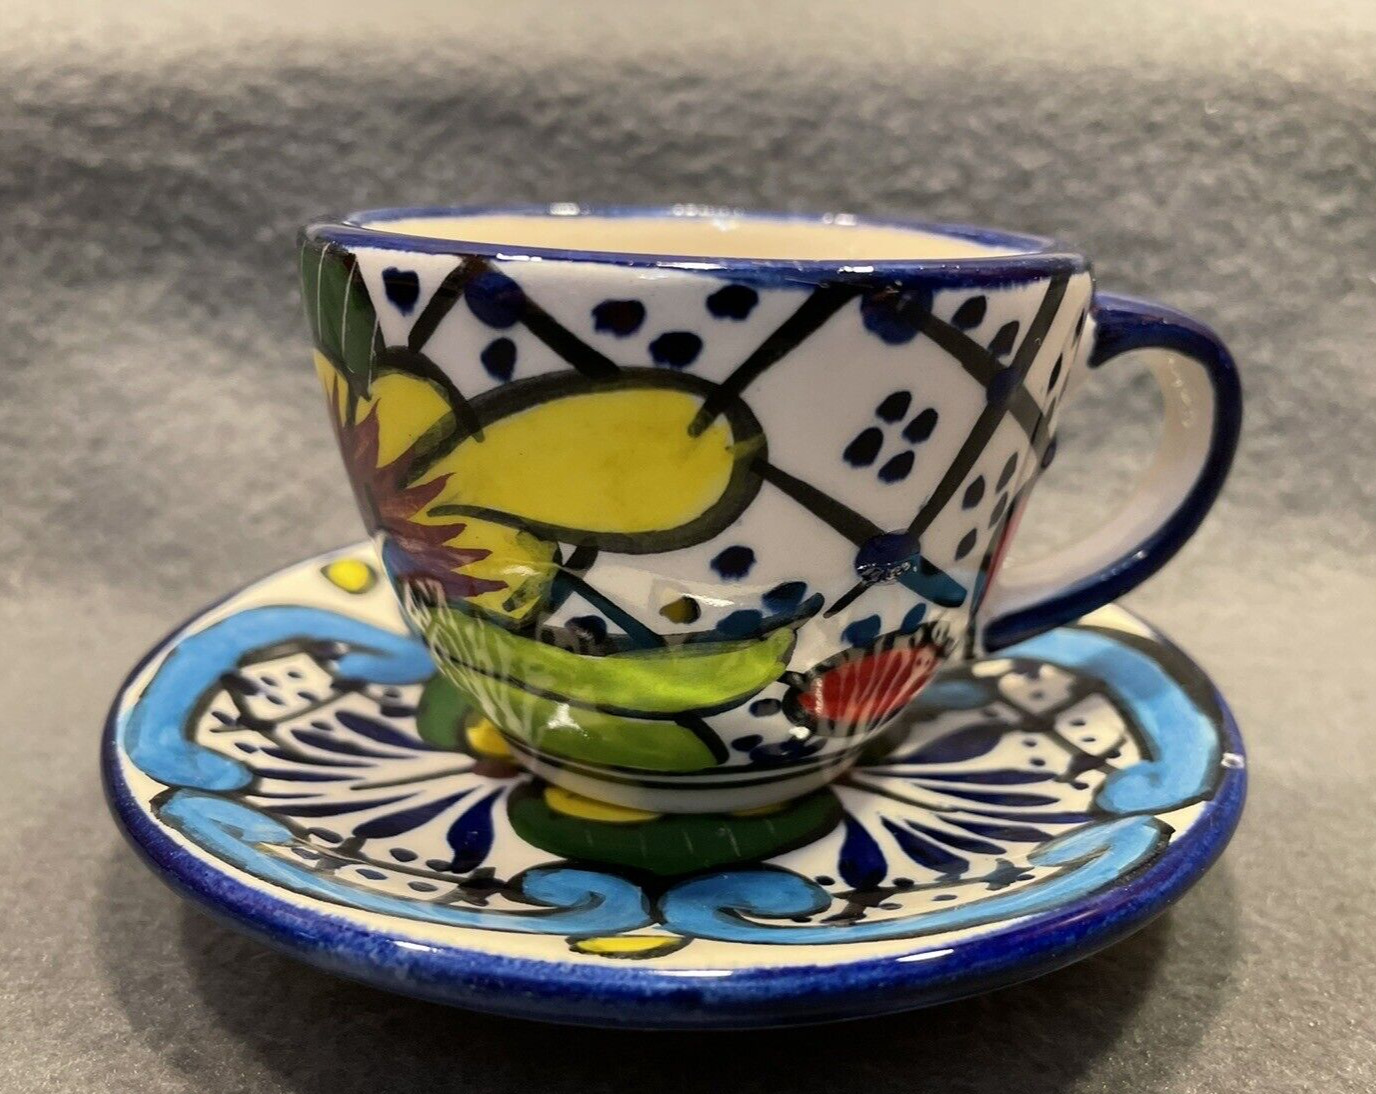 Mexican Alba Talavera Art Pottery Espresso, Tea Cup and Saucer Set